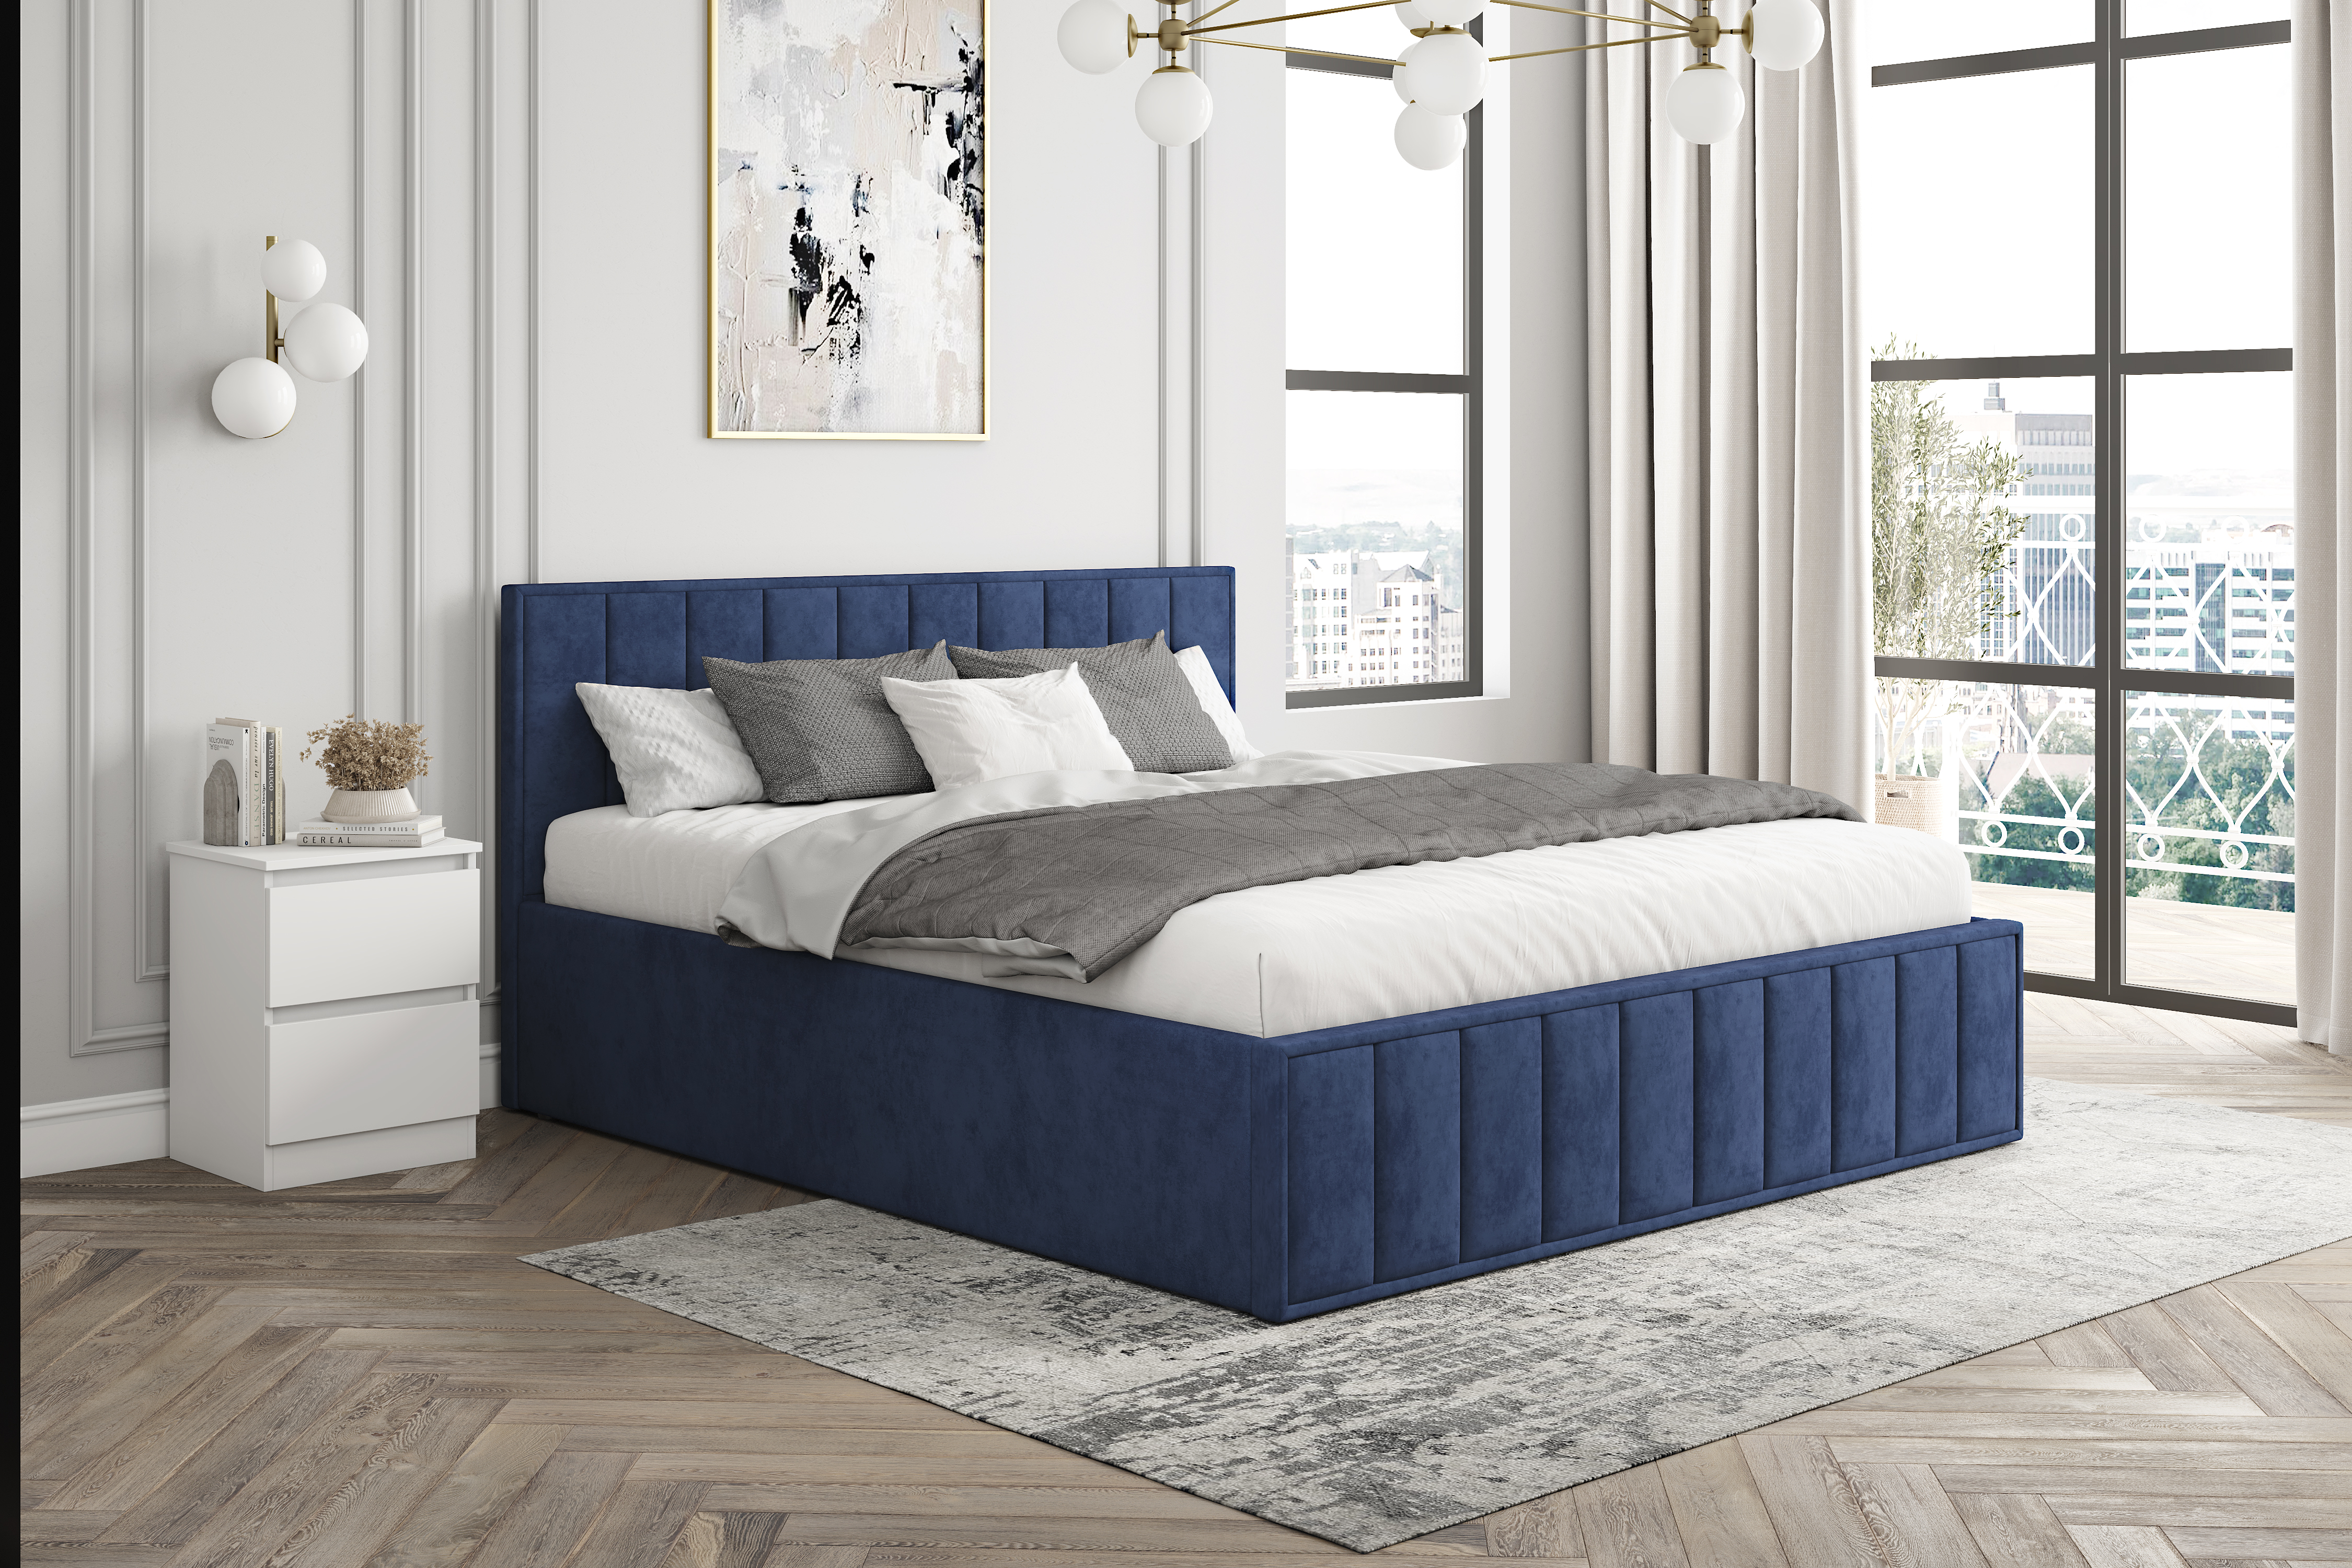 Мягкая кровать Лана 1,8 с подъемным механизмом (синий велюр)